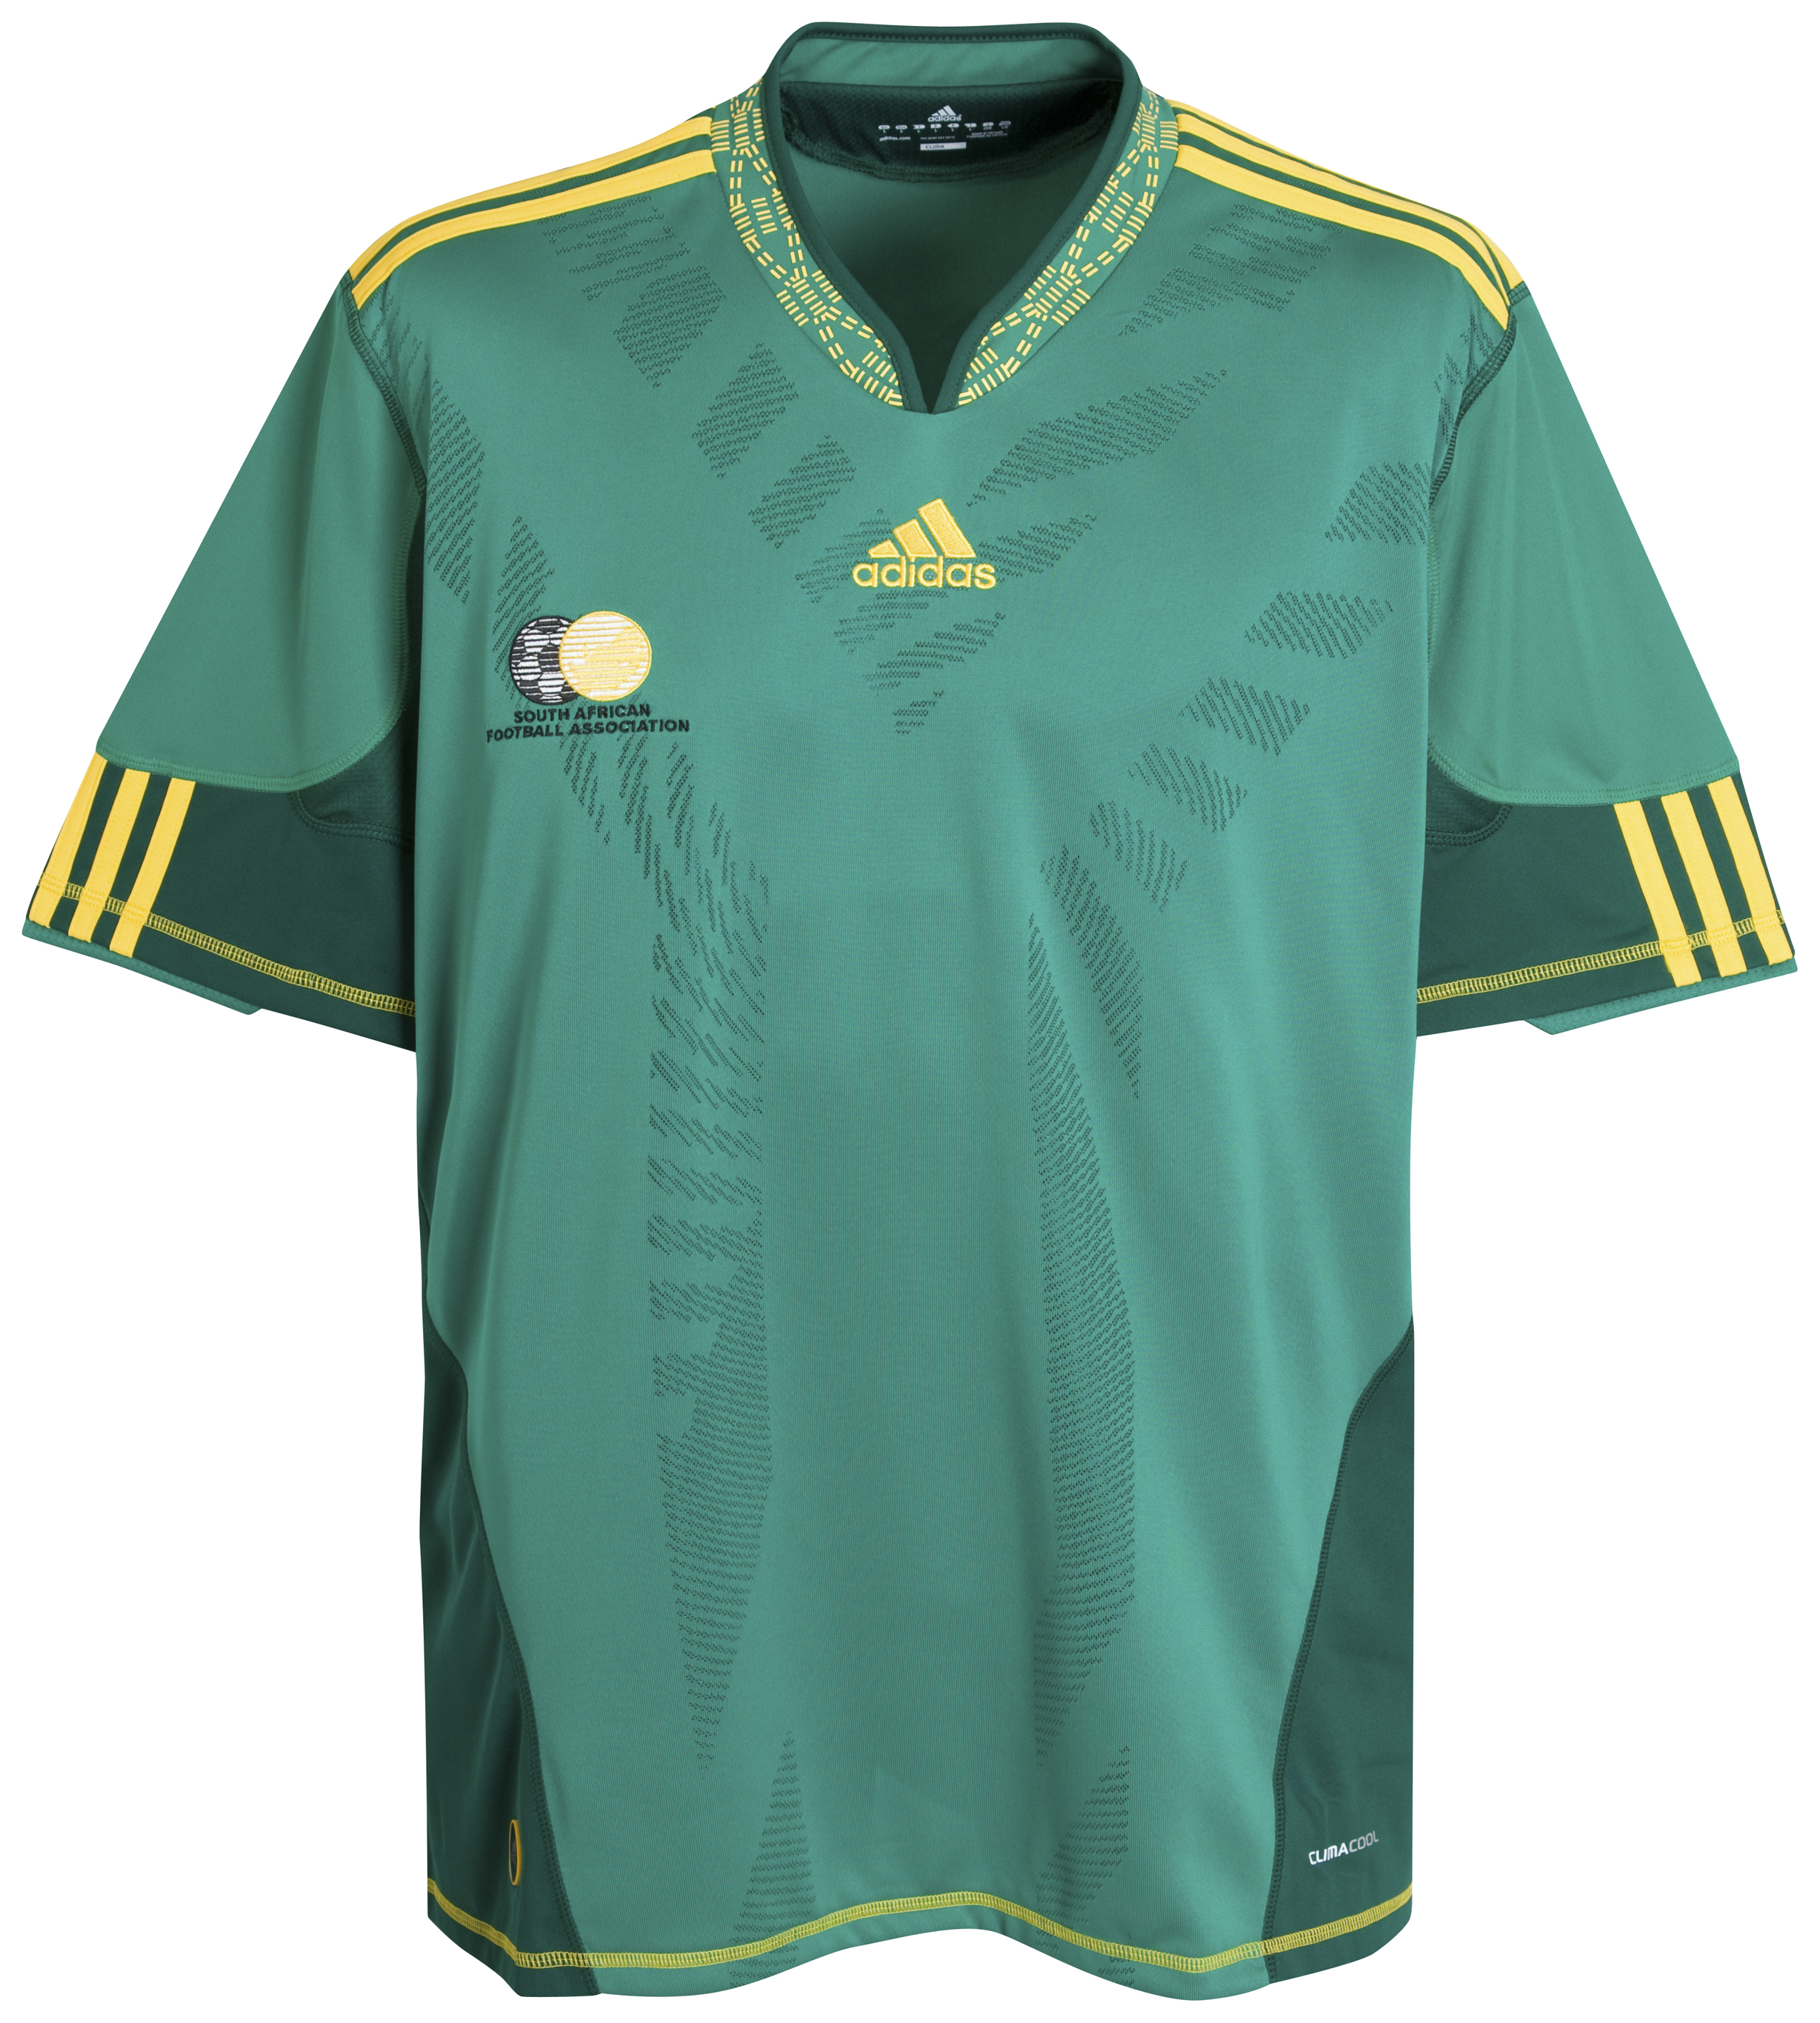 ملابس المنتخبات لكأس العالم 2010 Kb-66945